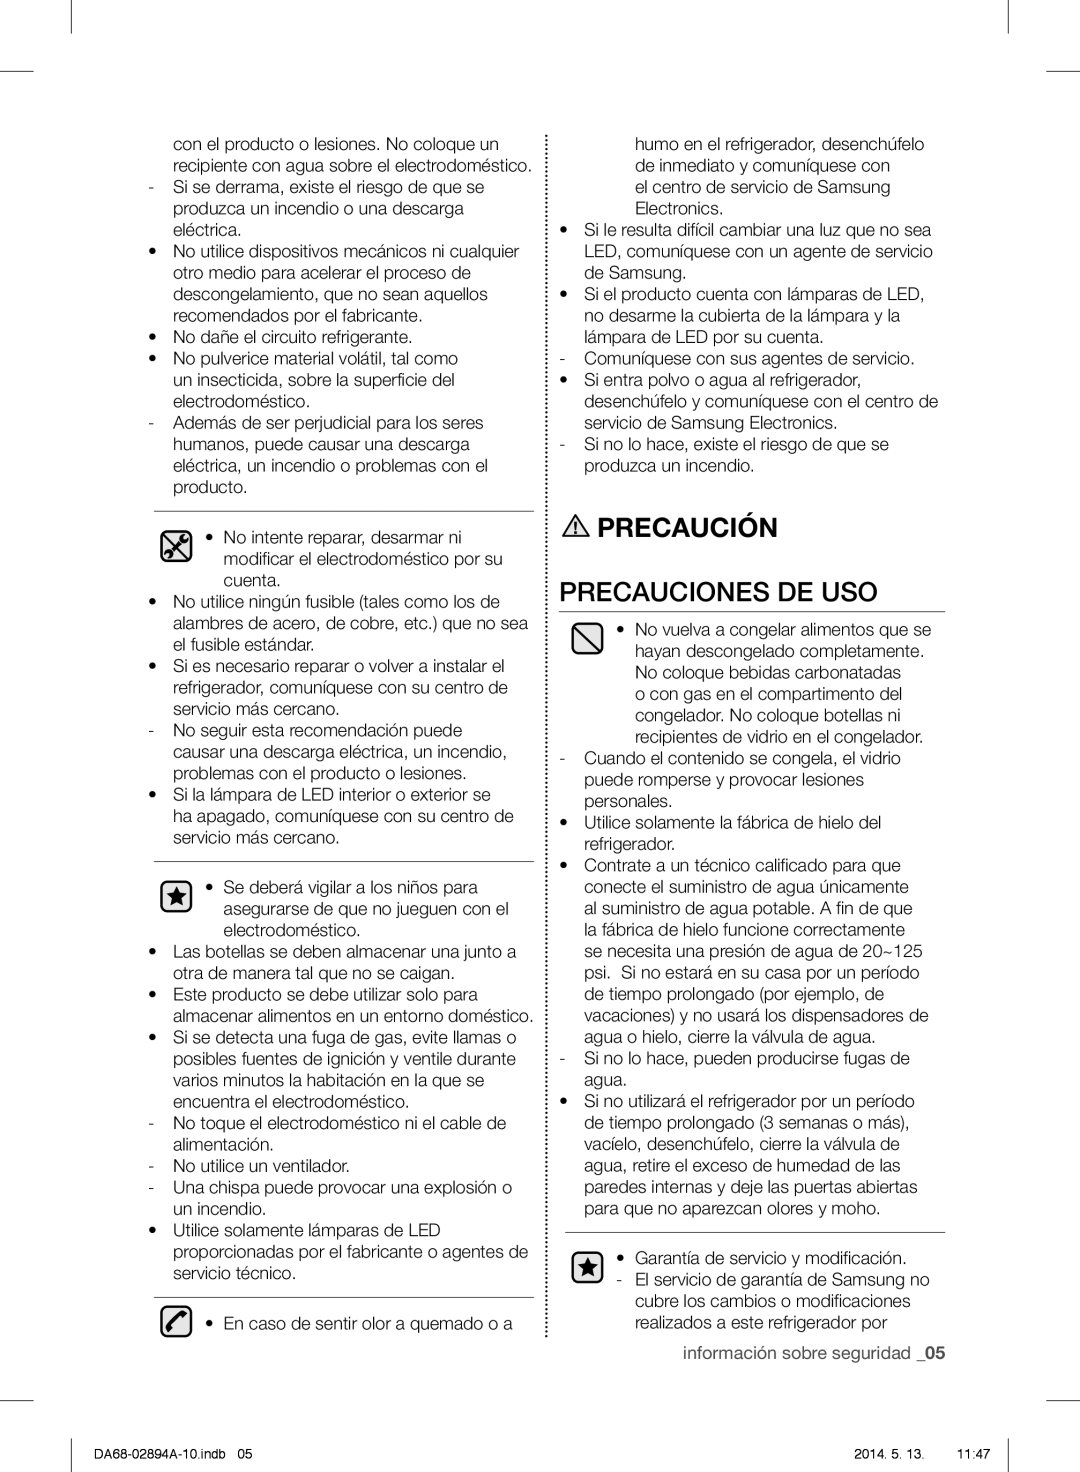 Samsung RF31FMESBSR user manual Precauciones De Uso, información sobre seguridad _05, Precaución 